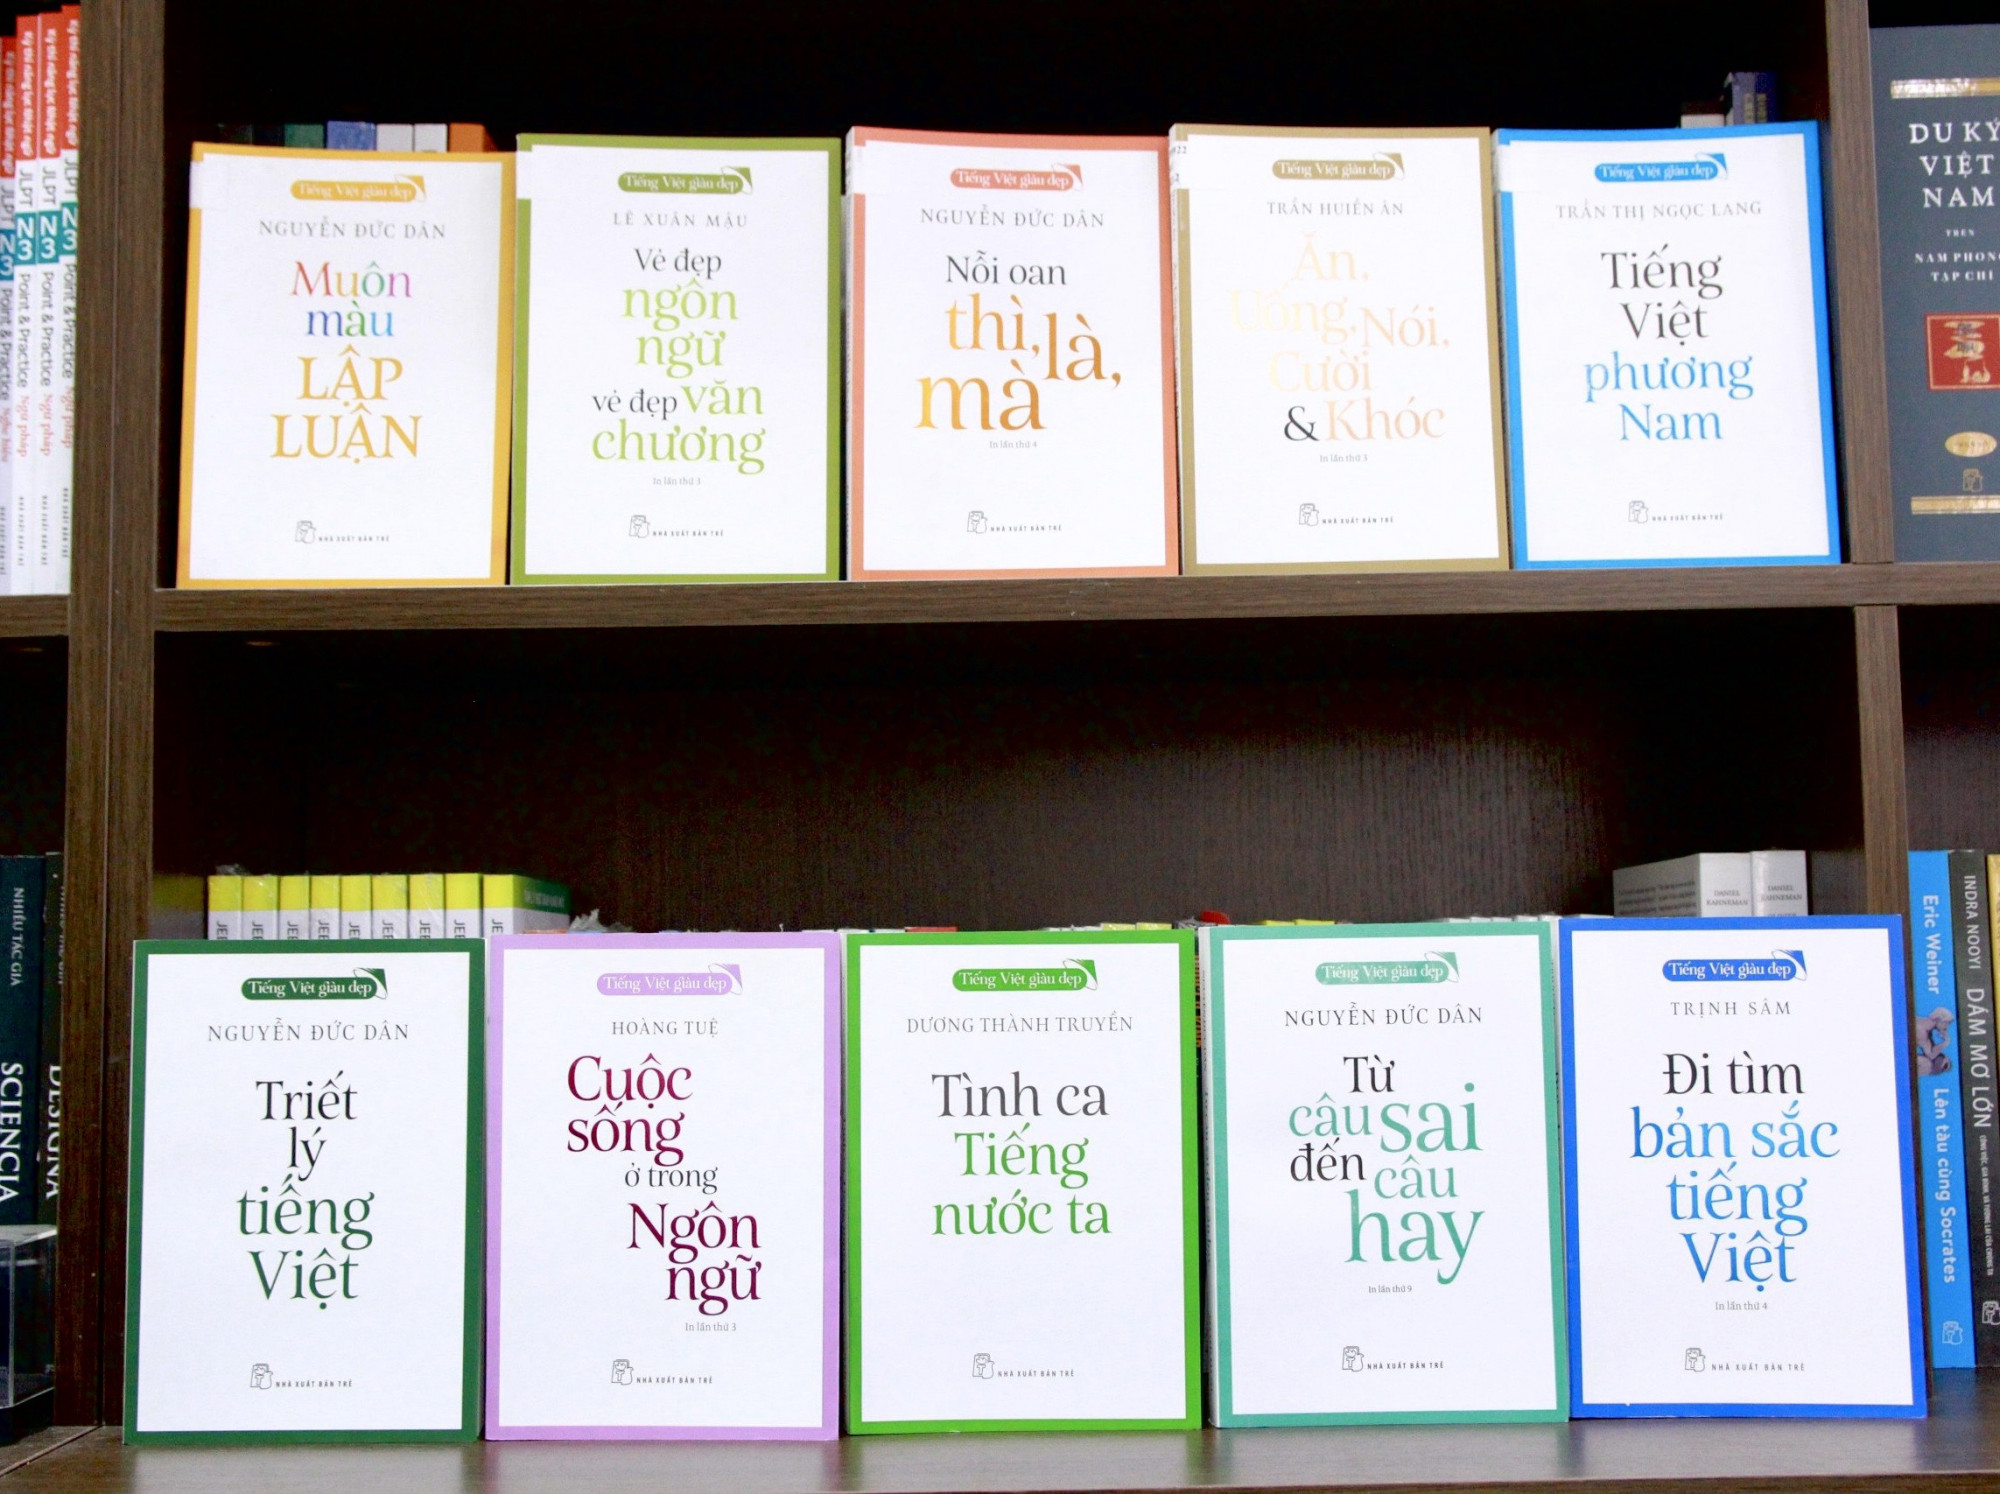 Bộ sách Tiếng Việt giàu đẹp hướng đến đối tượng bạn đọc đại chúng